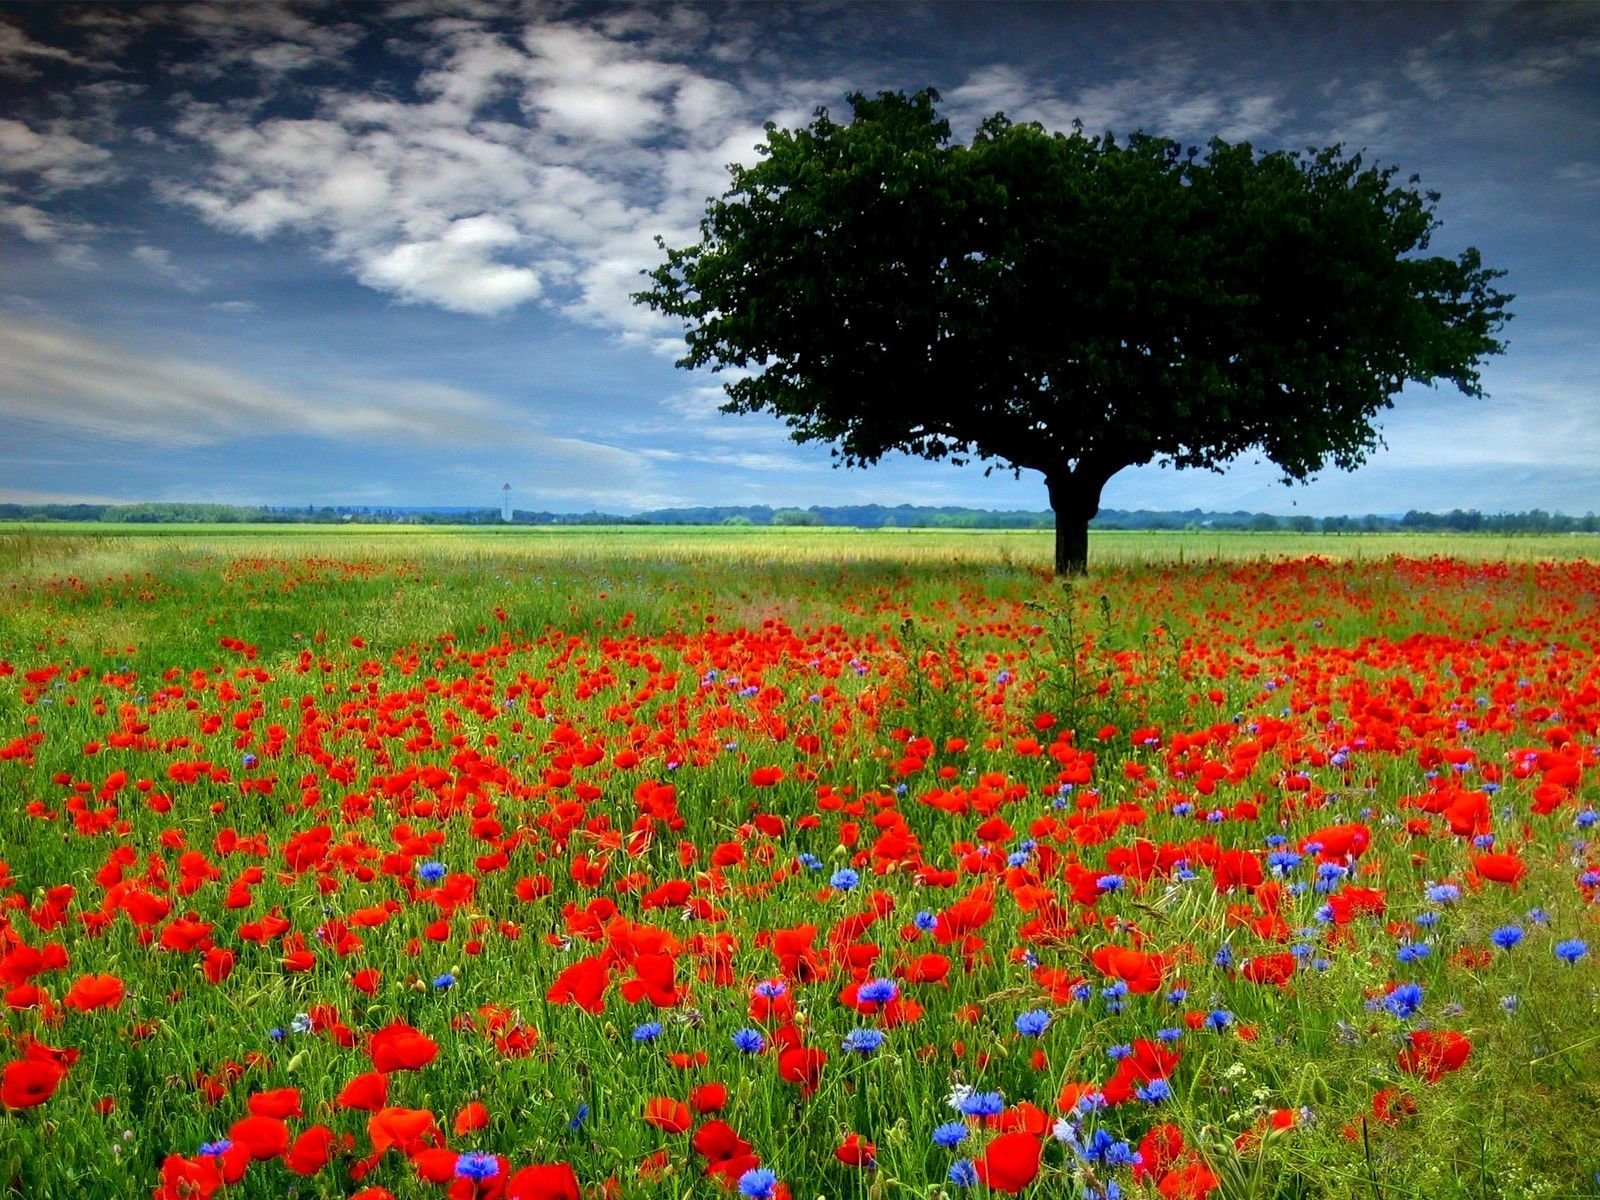 ما اجمل صور الطبيعة  - صفحة 3 Red-poppy-field-wallpapers_11808_1600x1200